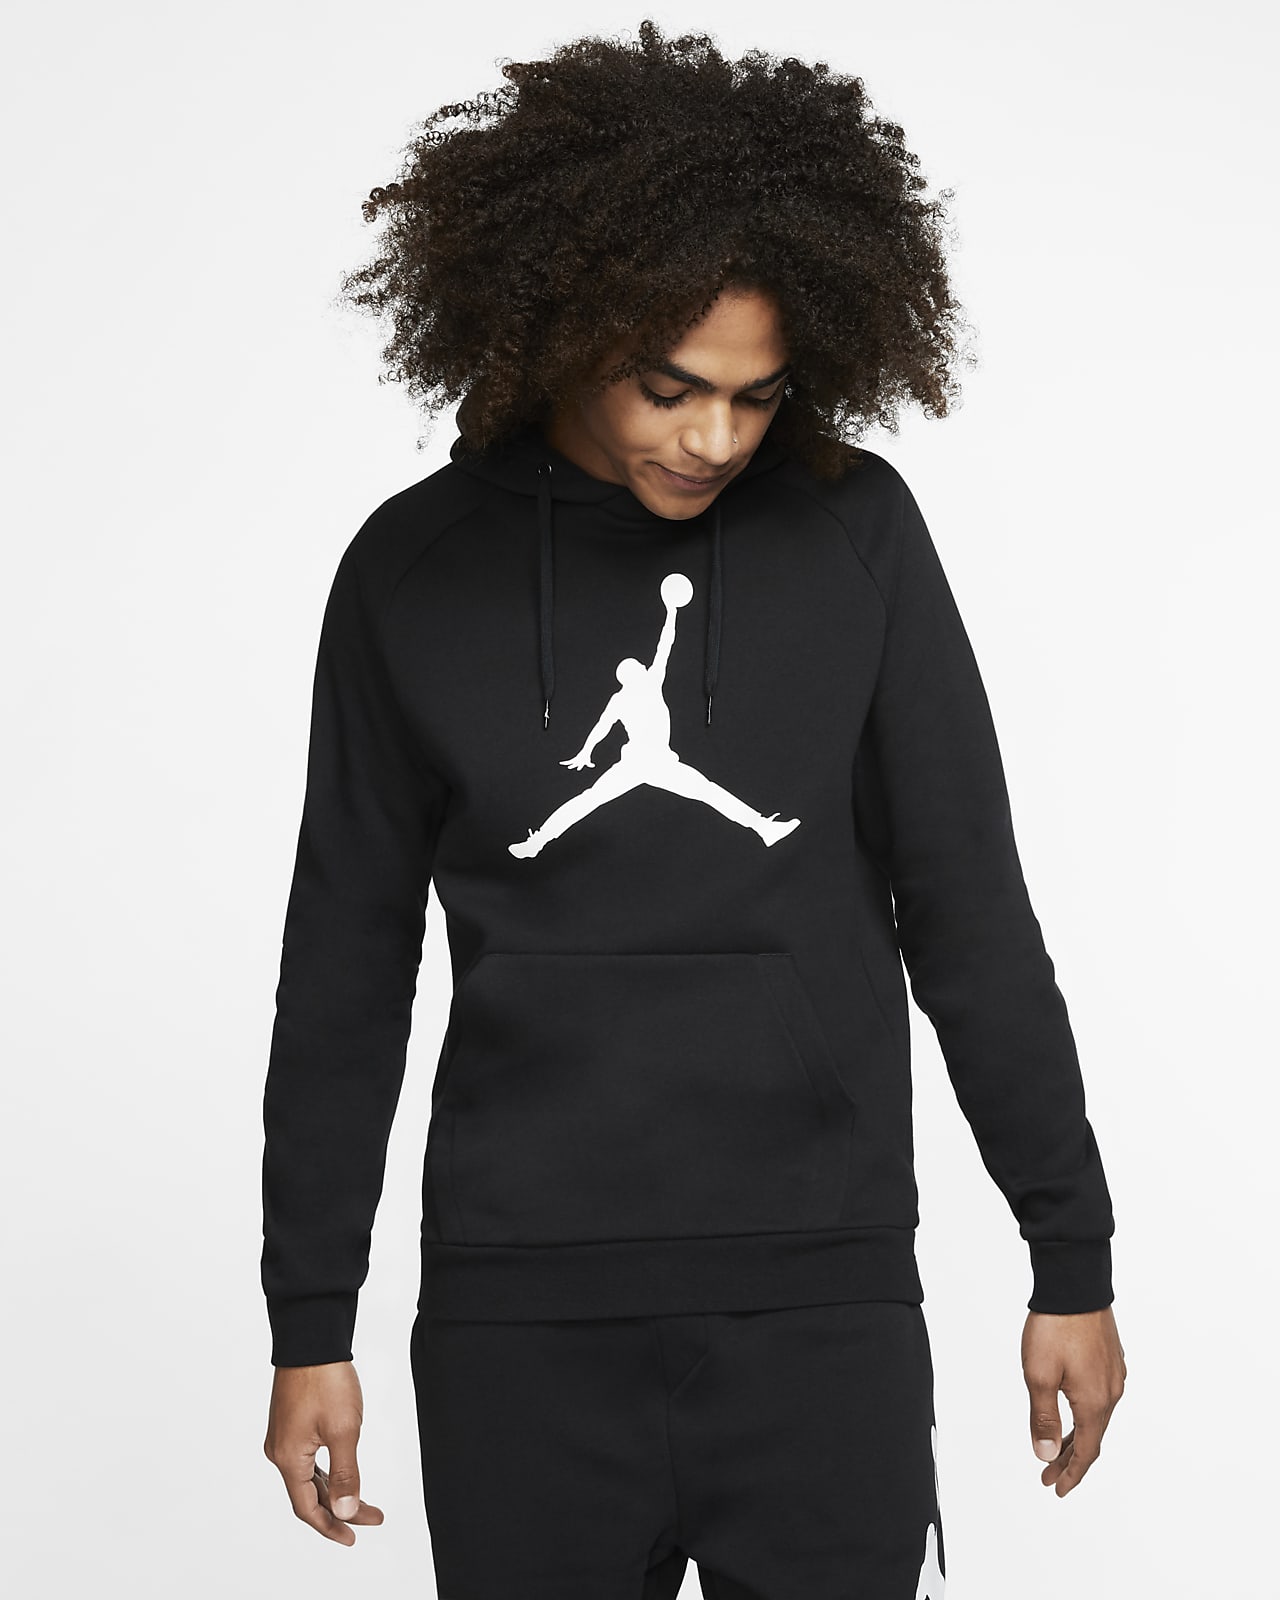 Dalset je bent Grazen Jordan Jumpman Logo Men's Fleece Pullover Hoodie. Nike ID